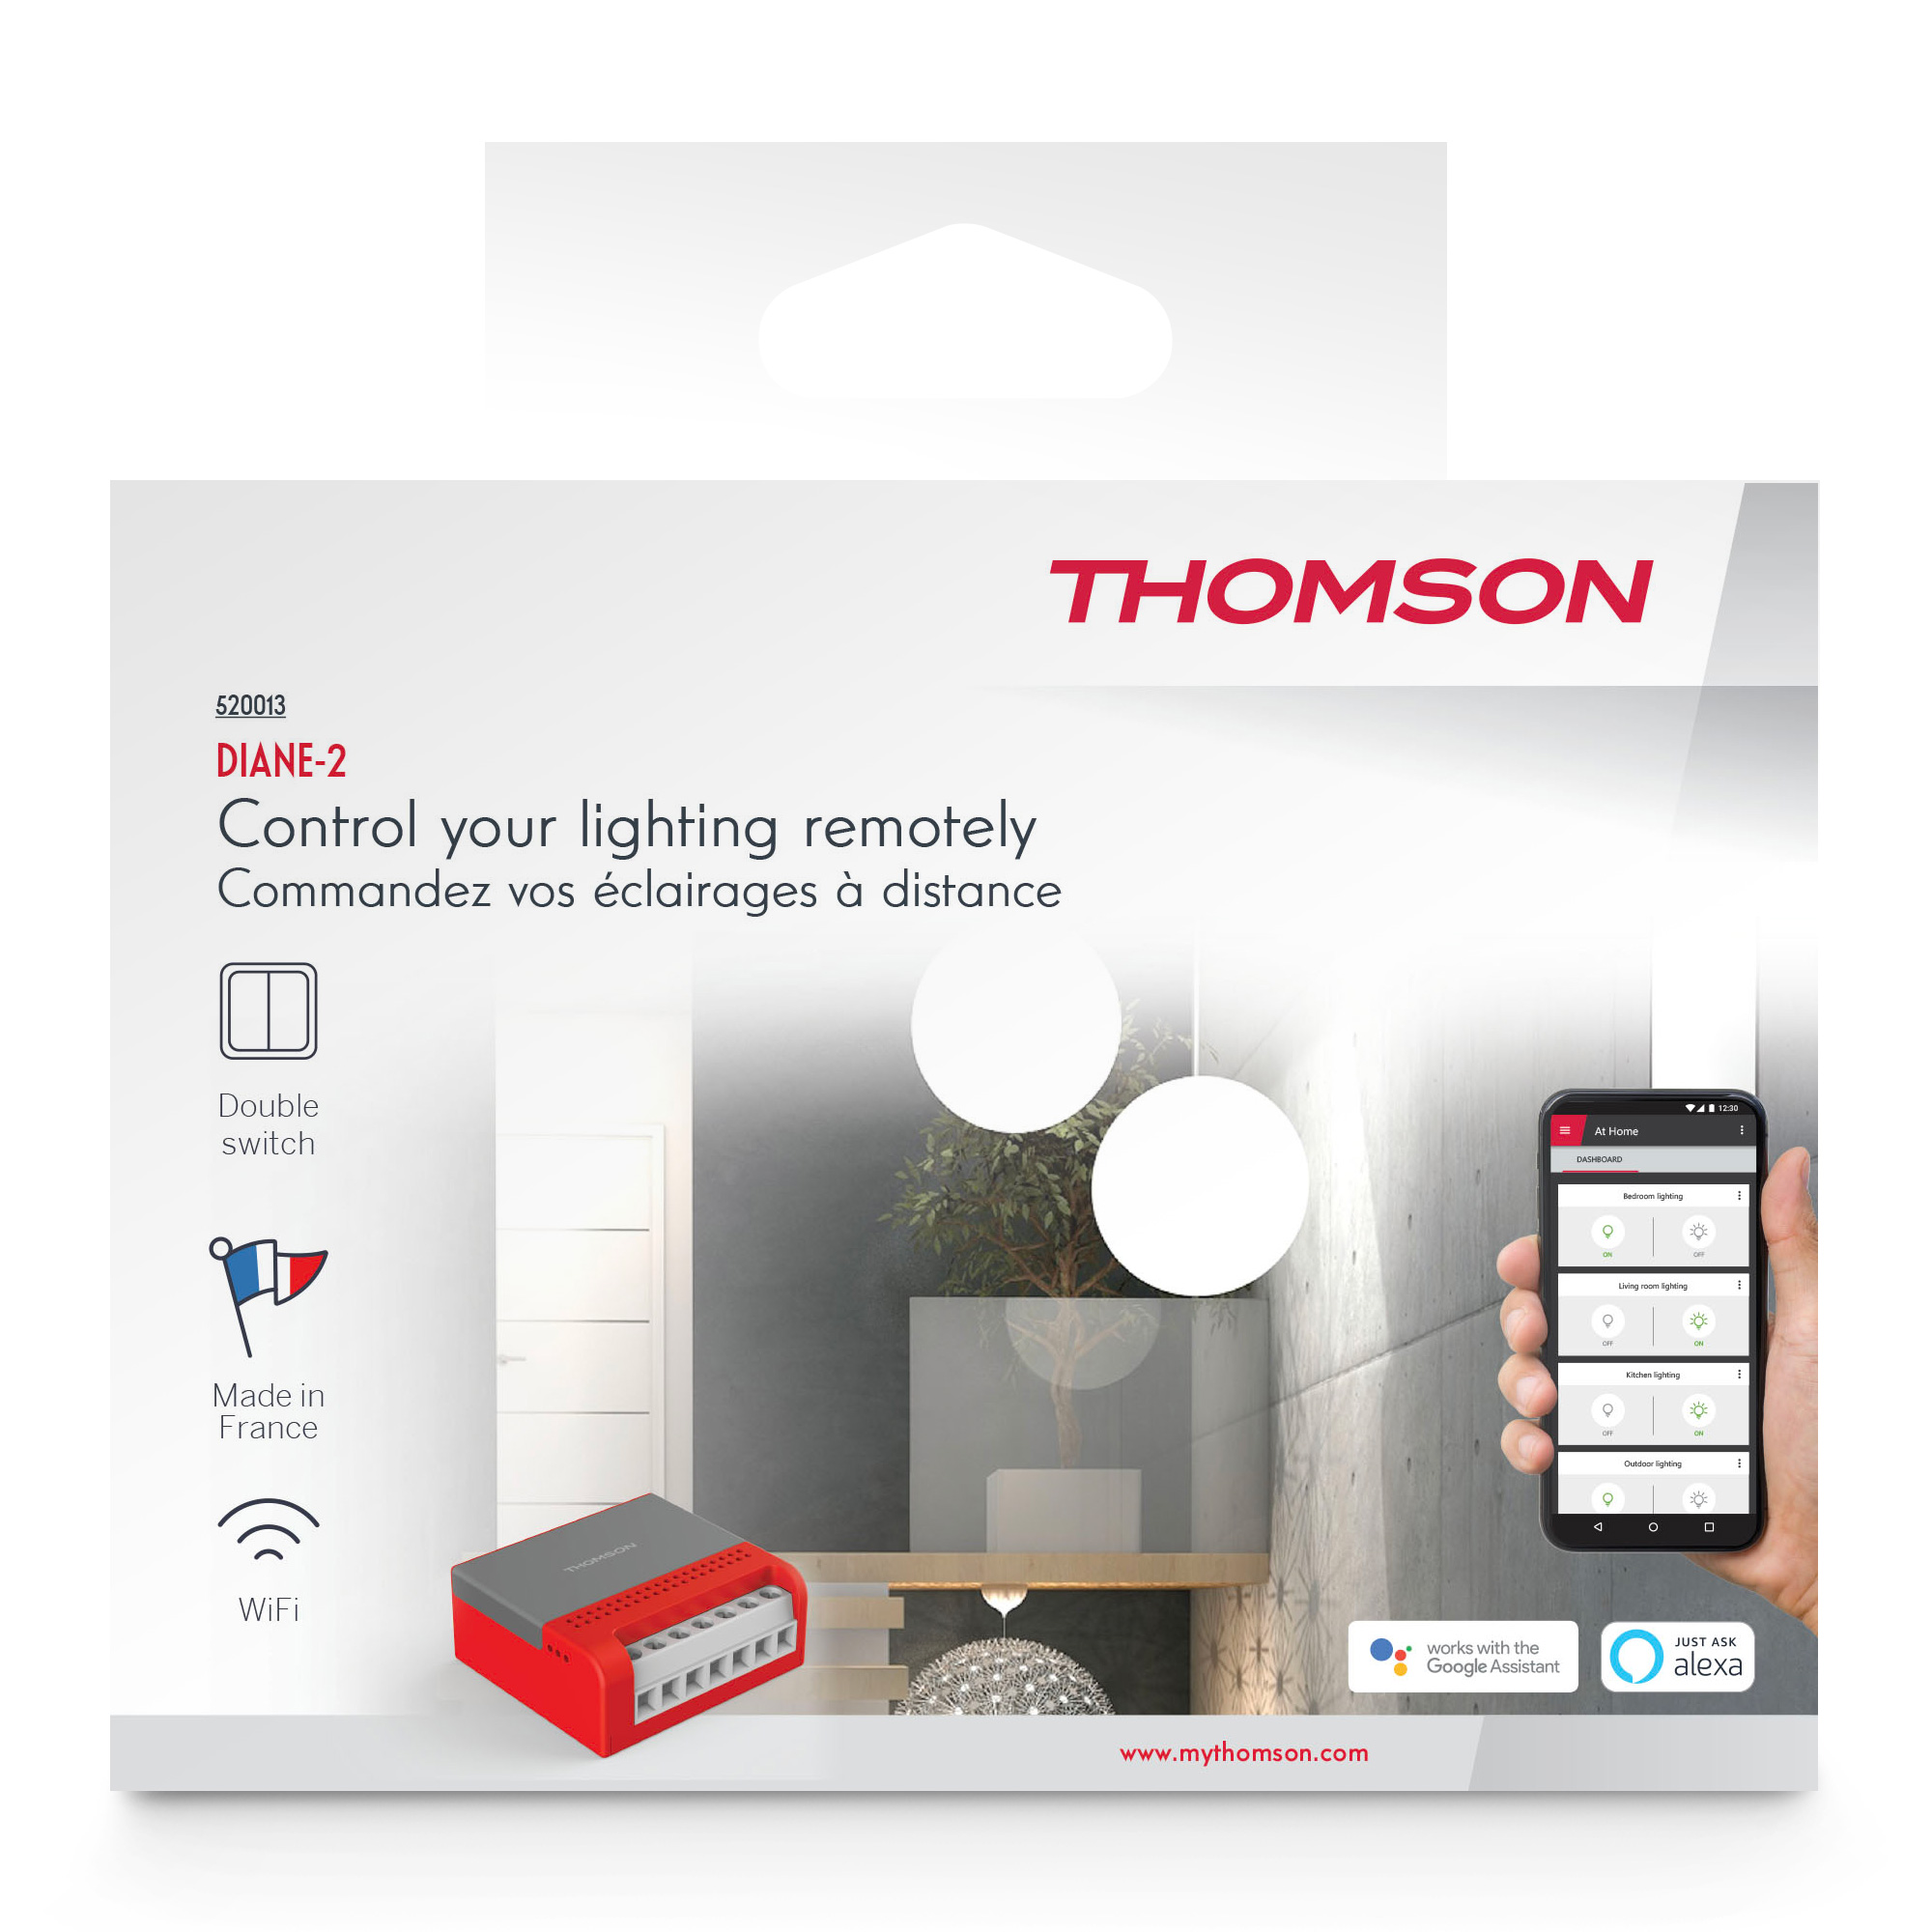 Module de chauffage (Thermostat) Wifi pour radiateur électrique ON/OFF -  CALI-ON 